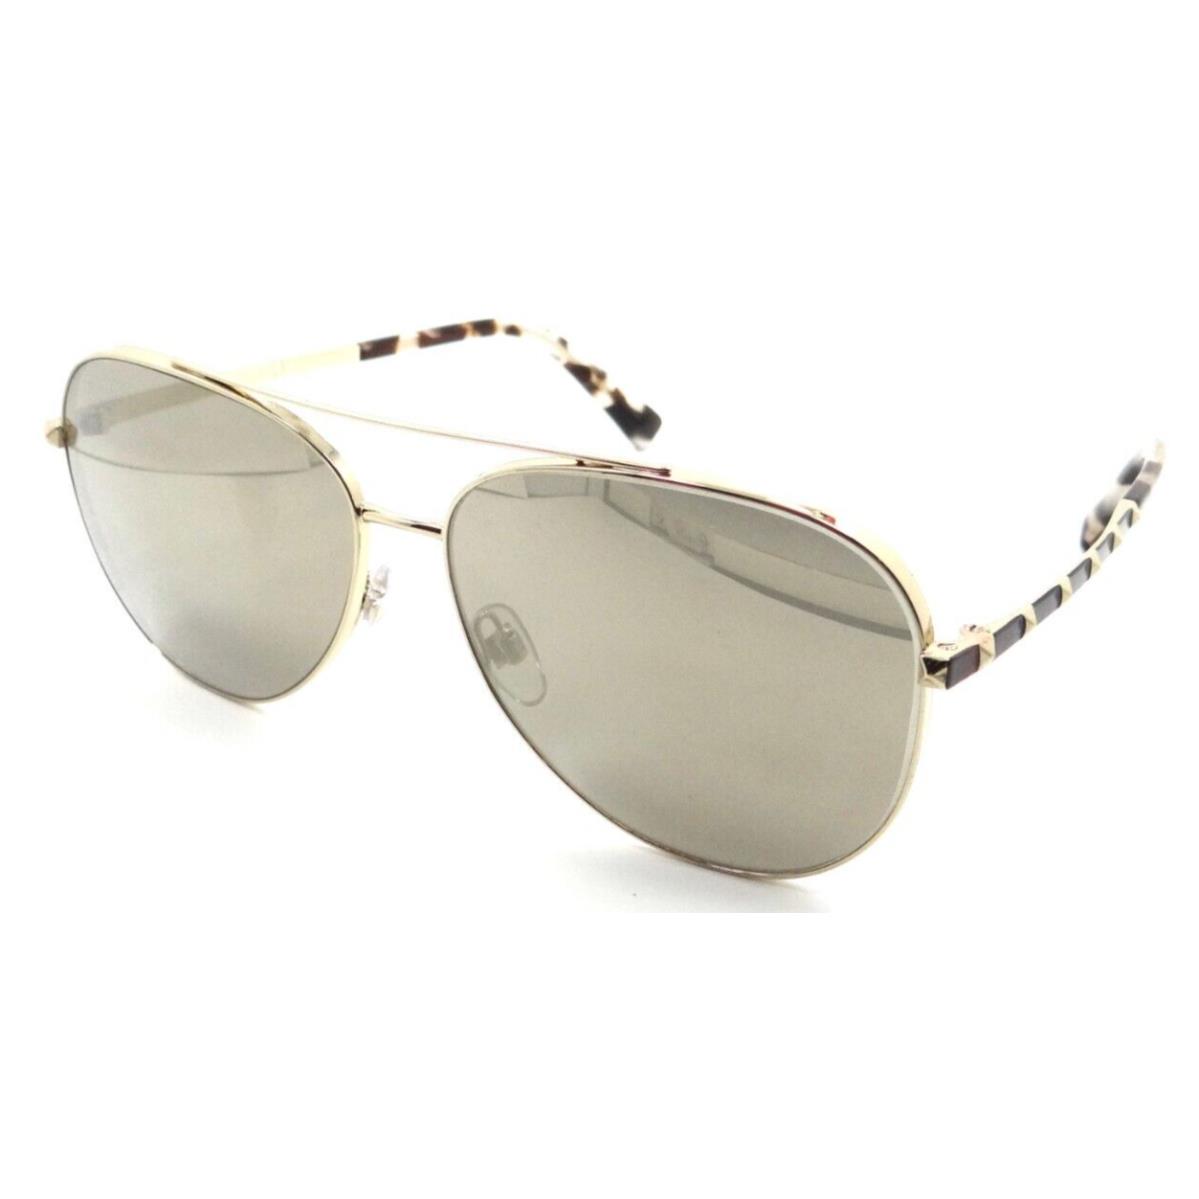 Valentino Sunglasses VA 2047 3003/5A 60-14-140 Pale Gold / Gold Mirror Italy